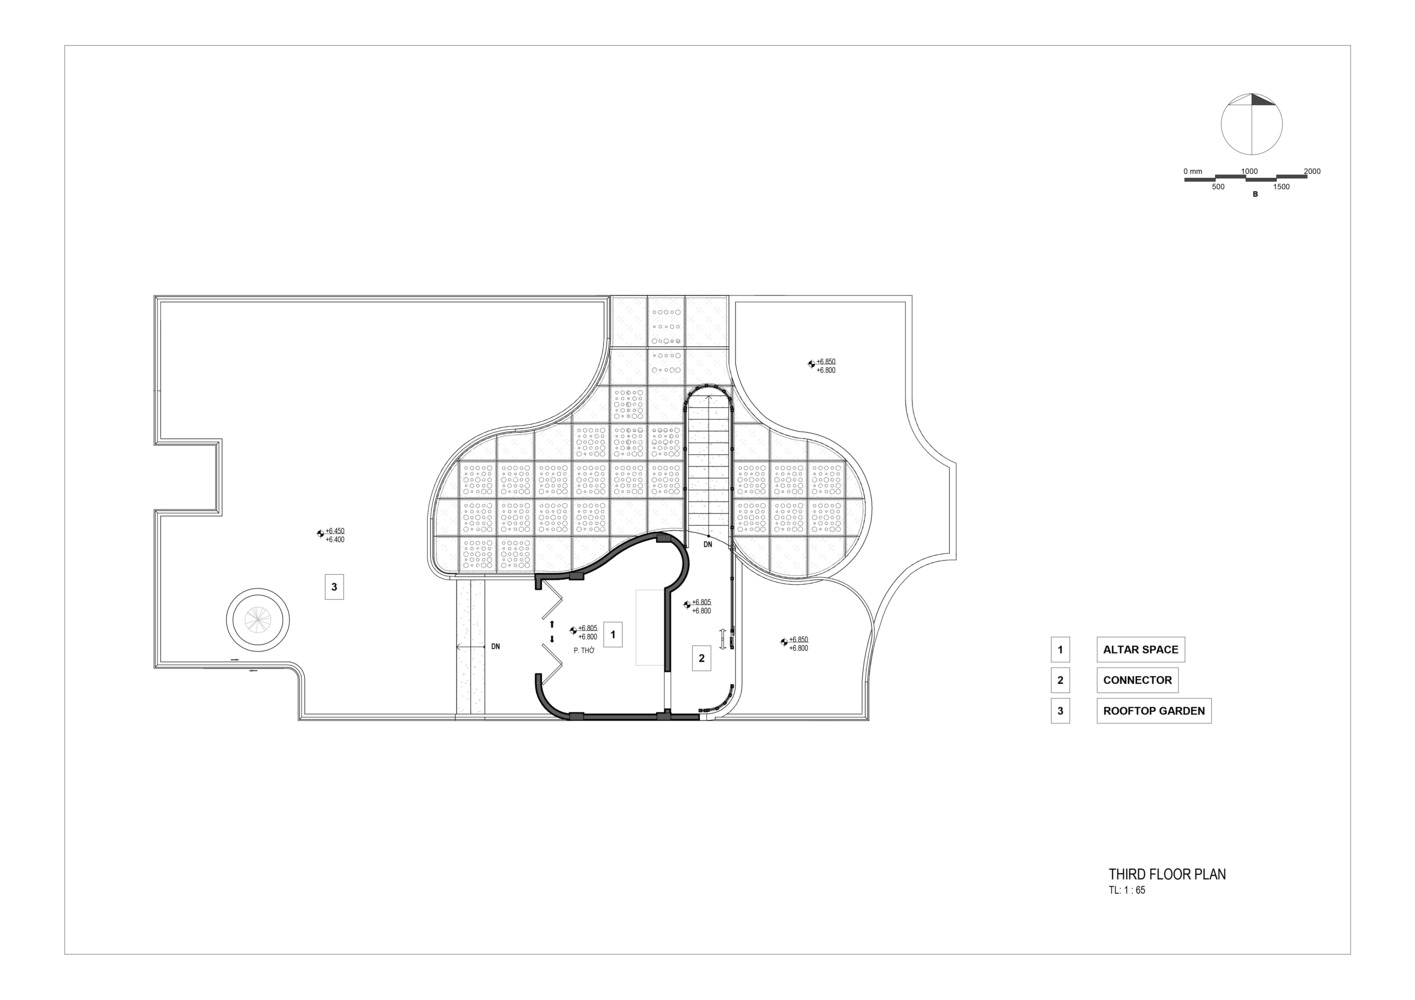 Sơ đồ thiết kế mặt bằng tầng 1, tầng 2 và tầng 3 của Hana House do Dim Studio cung cấp.